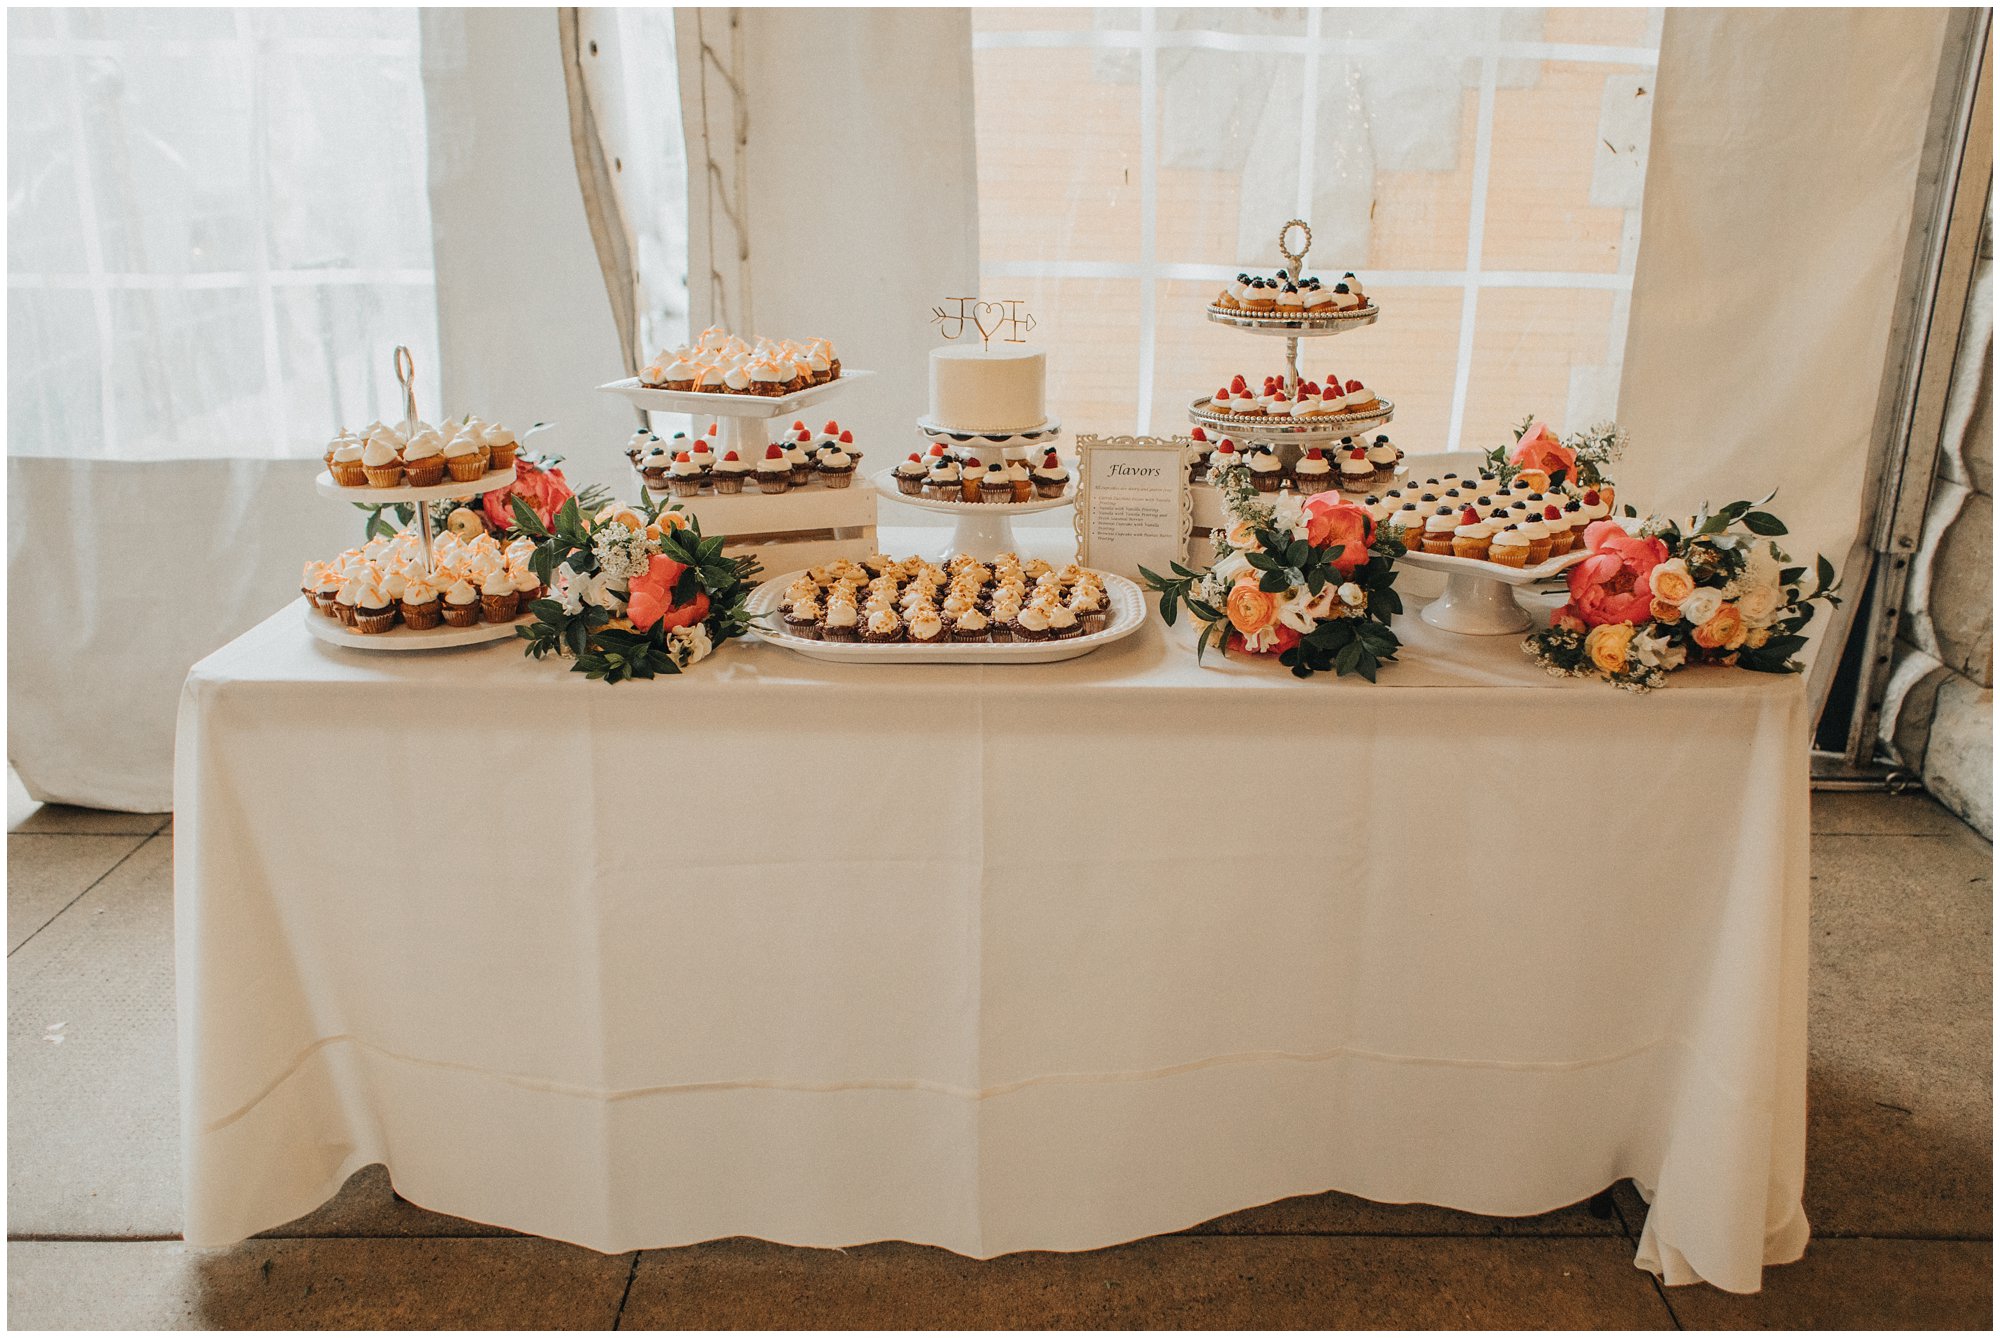 Be Well Bakery wedding cake, wedding cupcake, vegan gluten-free wedding cake, vegan gluten-free 